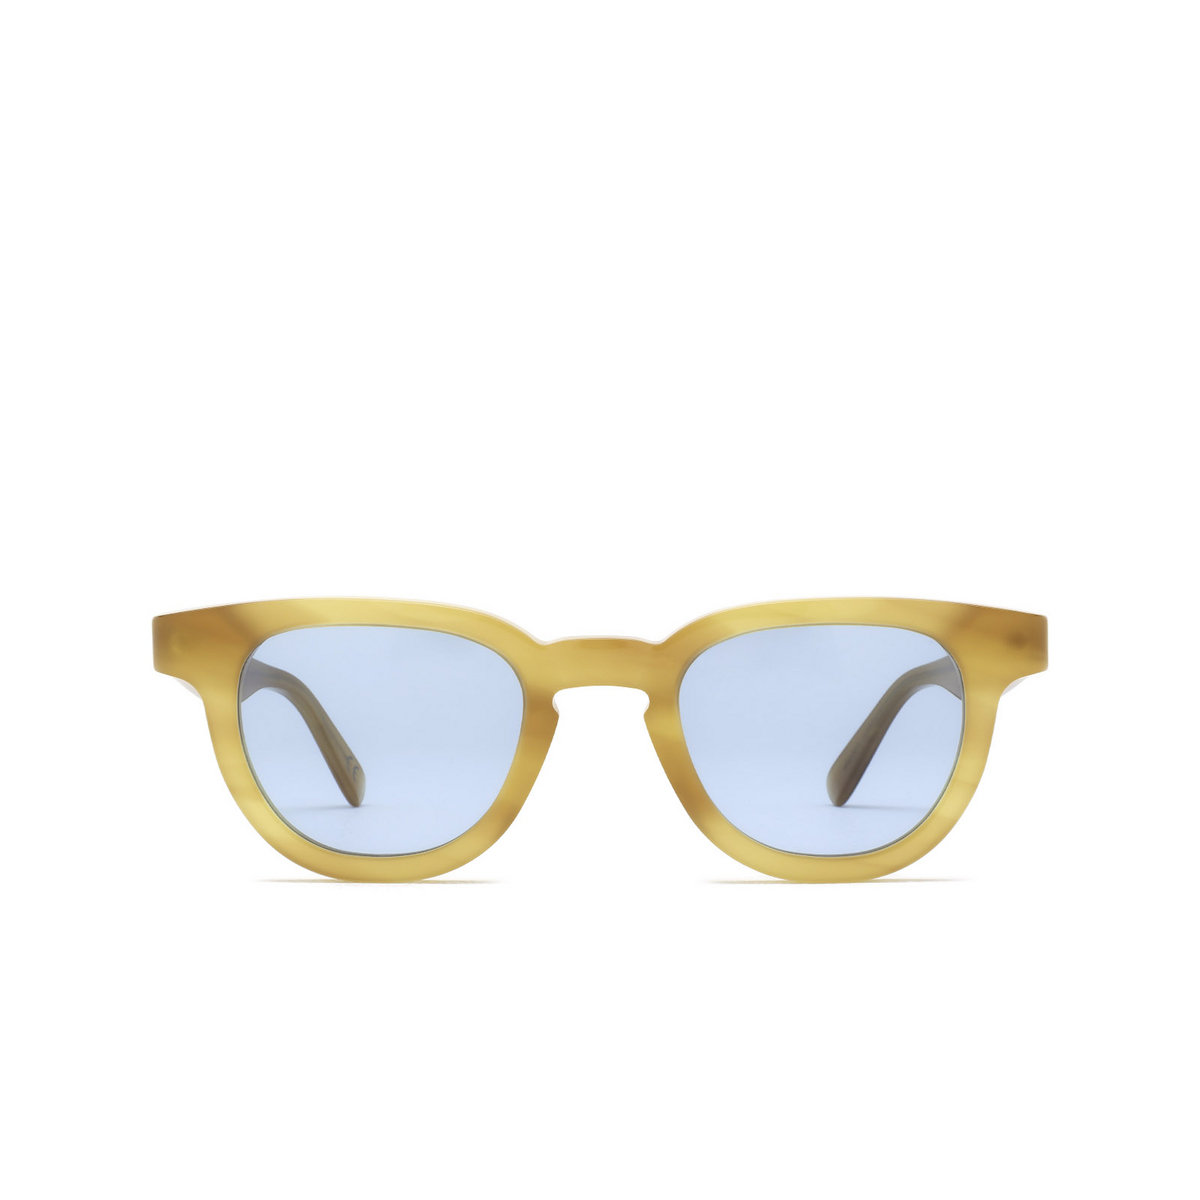 Retrosuperfuture® Square Sunglasses: Certo color Bagutta Nlx - front view.